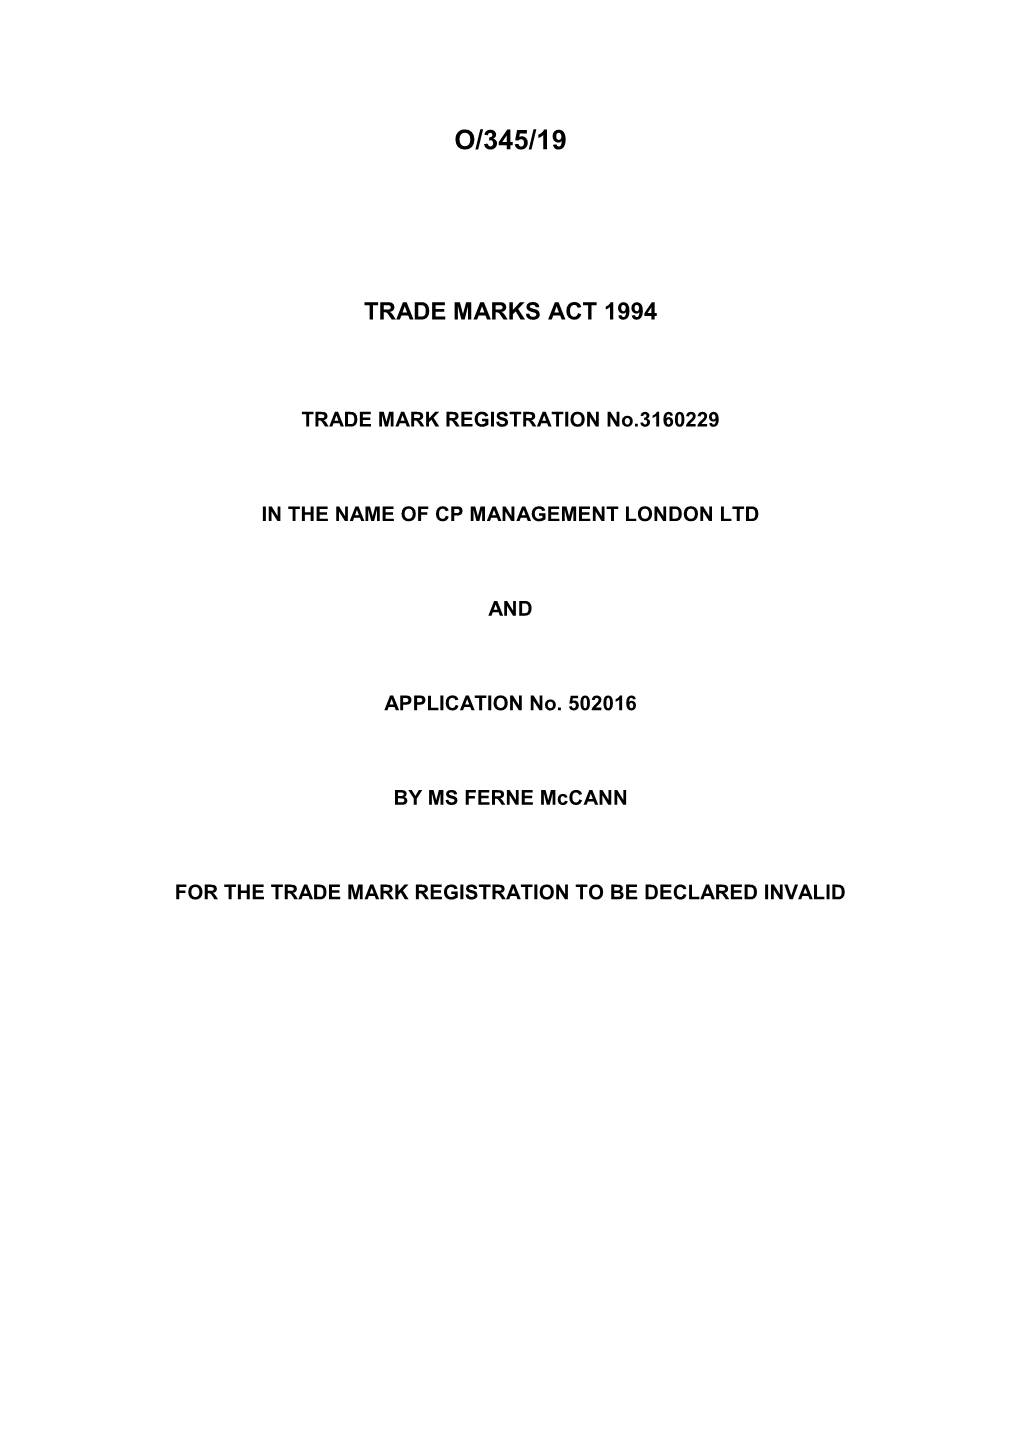 Trade Marks Inter Partes Decision O/345/19